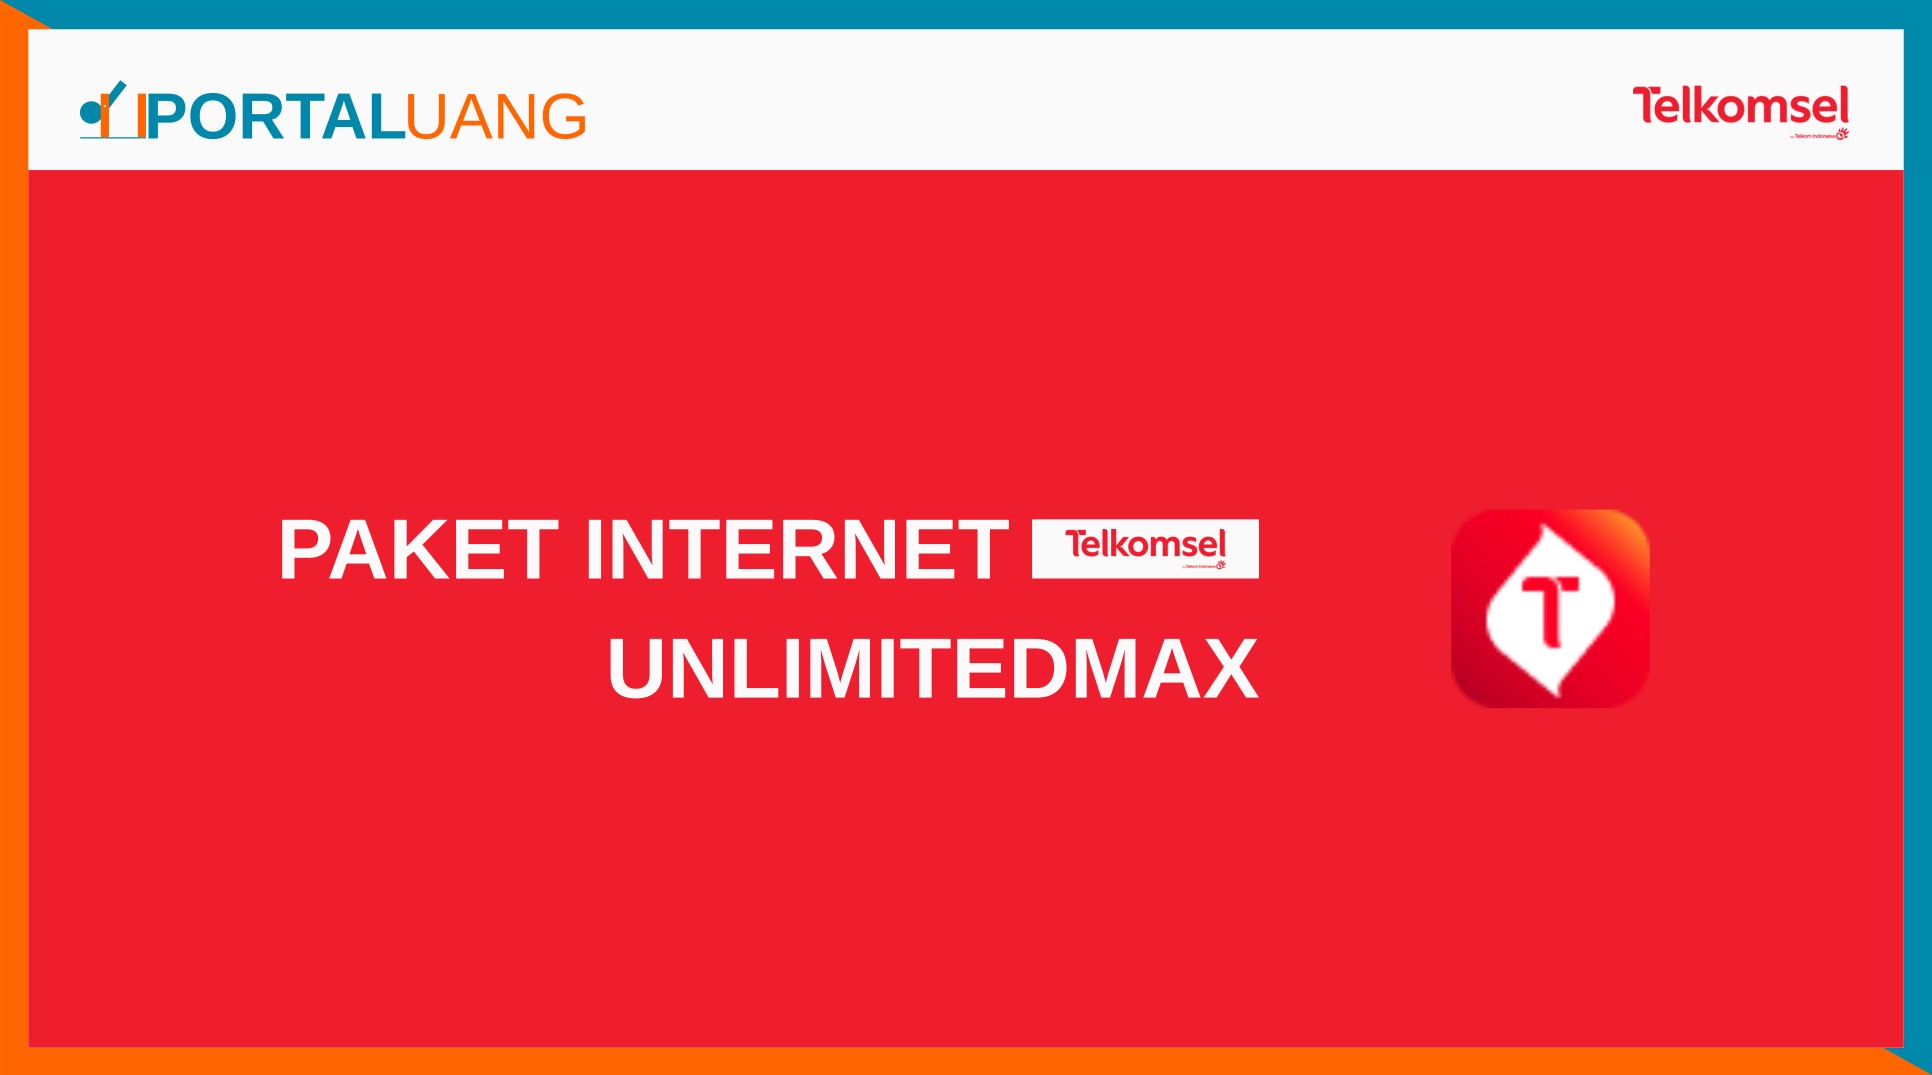 Internet max adalah